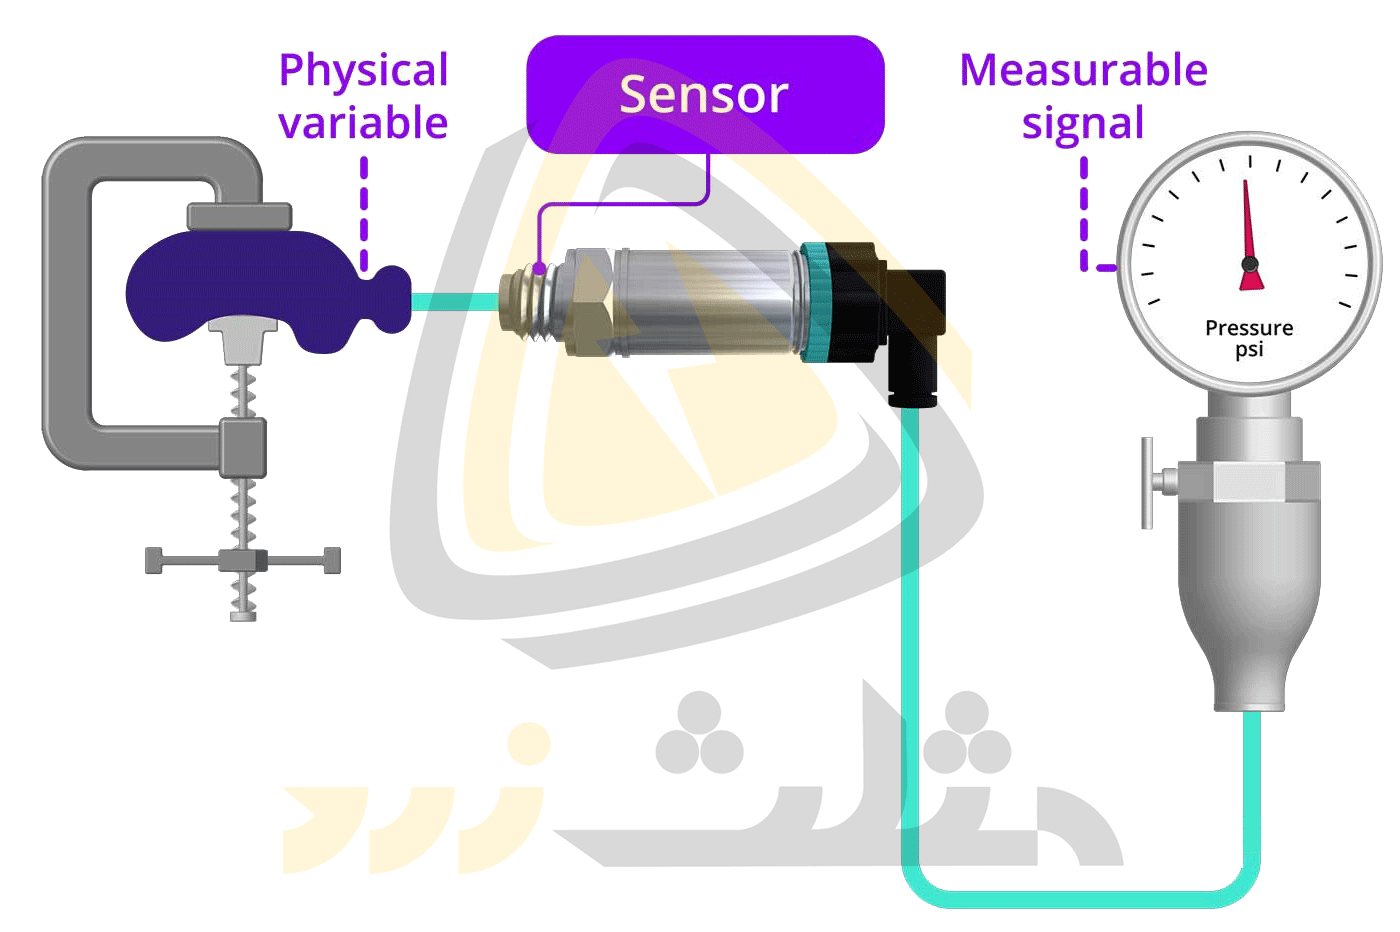 اندازه گیری فشار توسط یک سنسور و تبدیل آن به سیگنال قابل قرائت